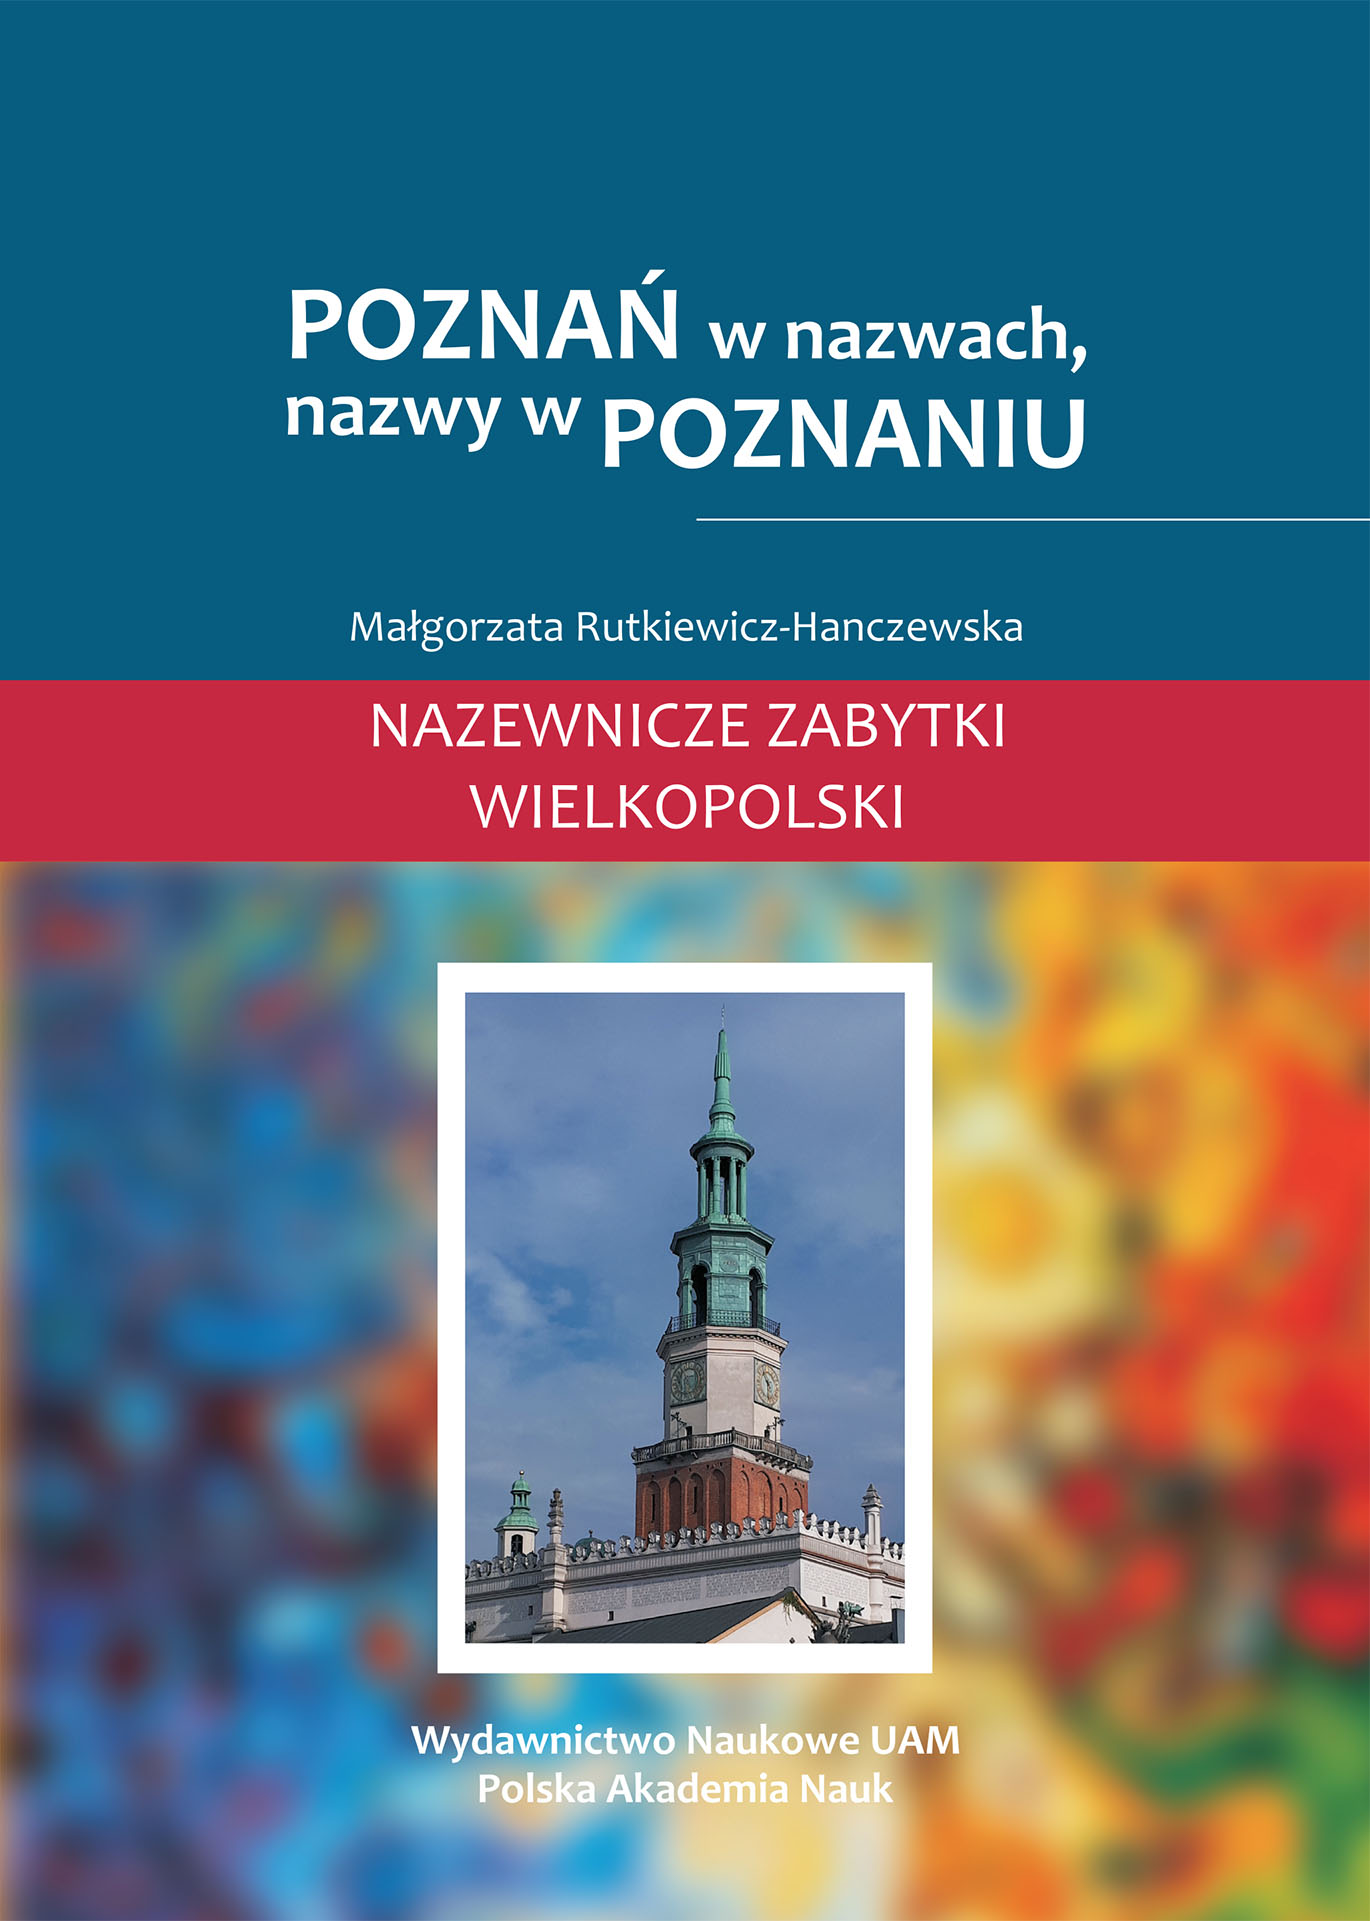 Poznań in names, names in Poznań